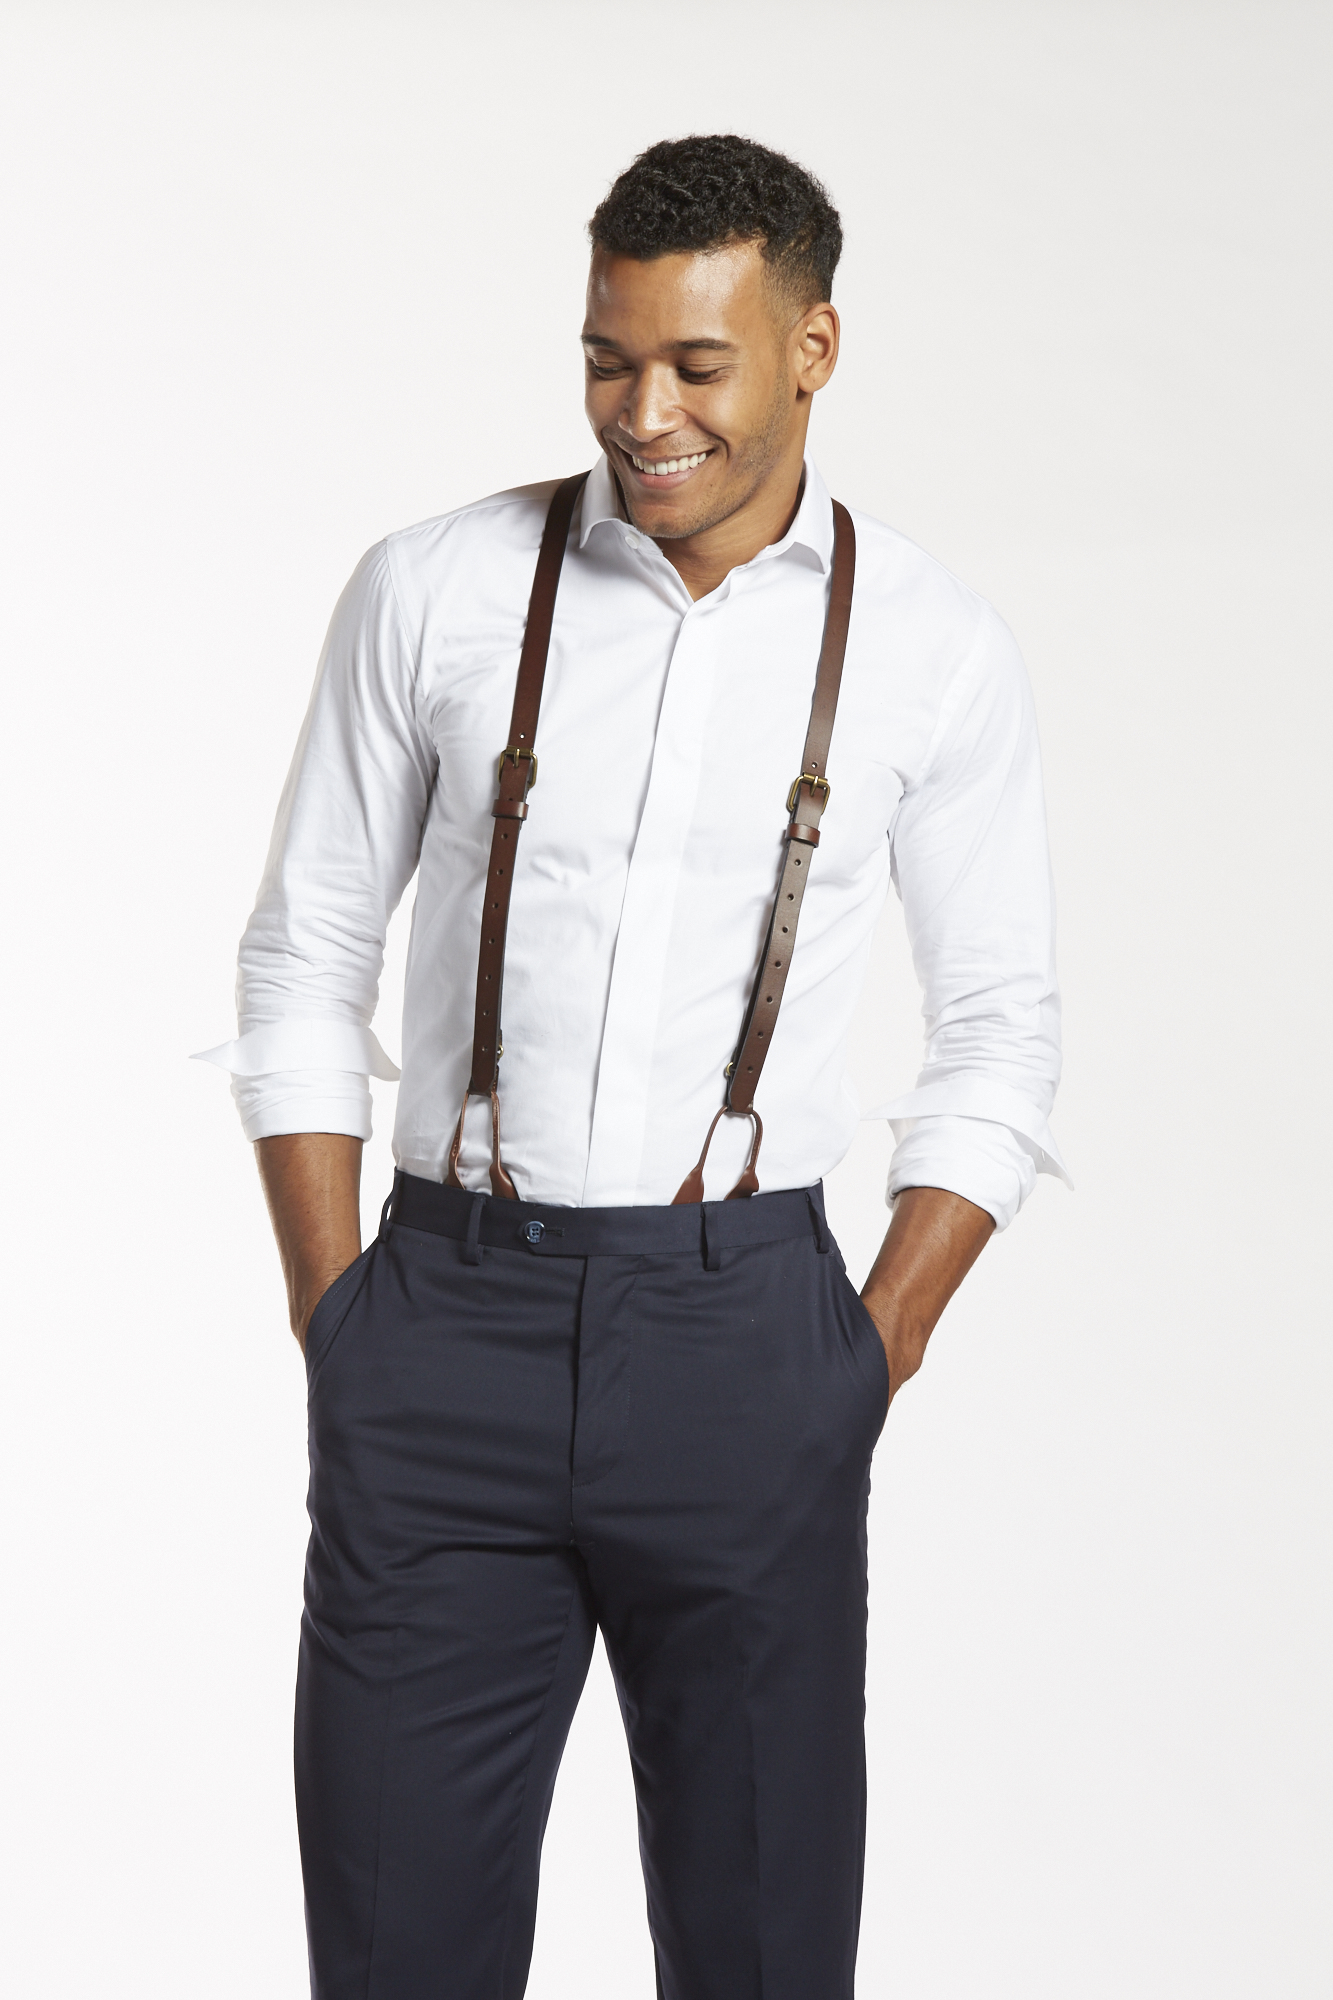 Black Shoulder Straps 4 Clips Black Suspenders Belt Adjustable Yback  Suspenders For Pants